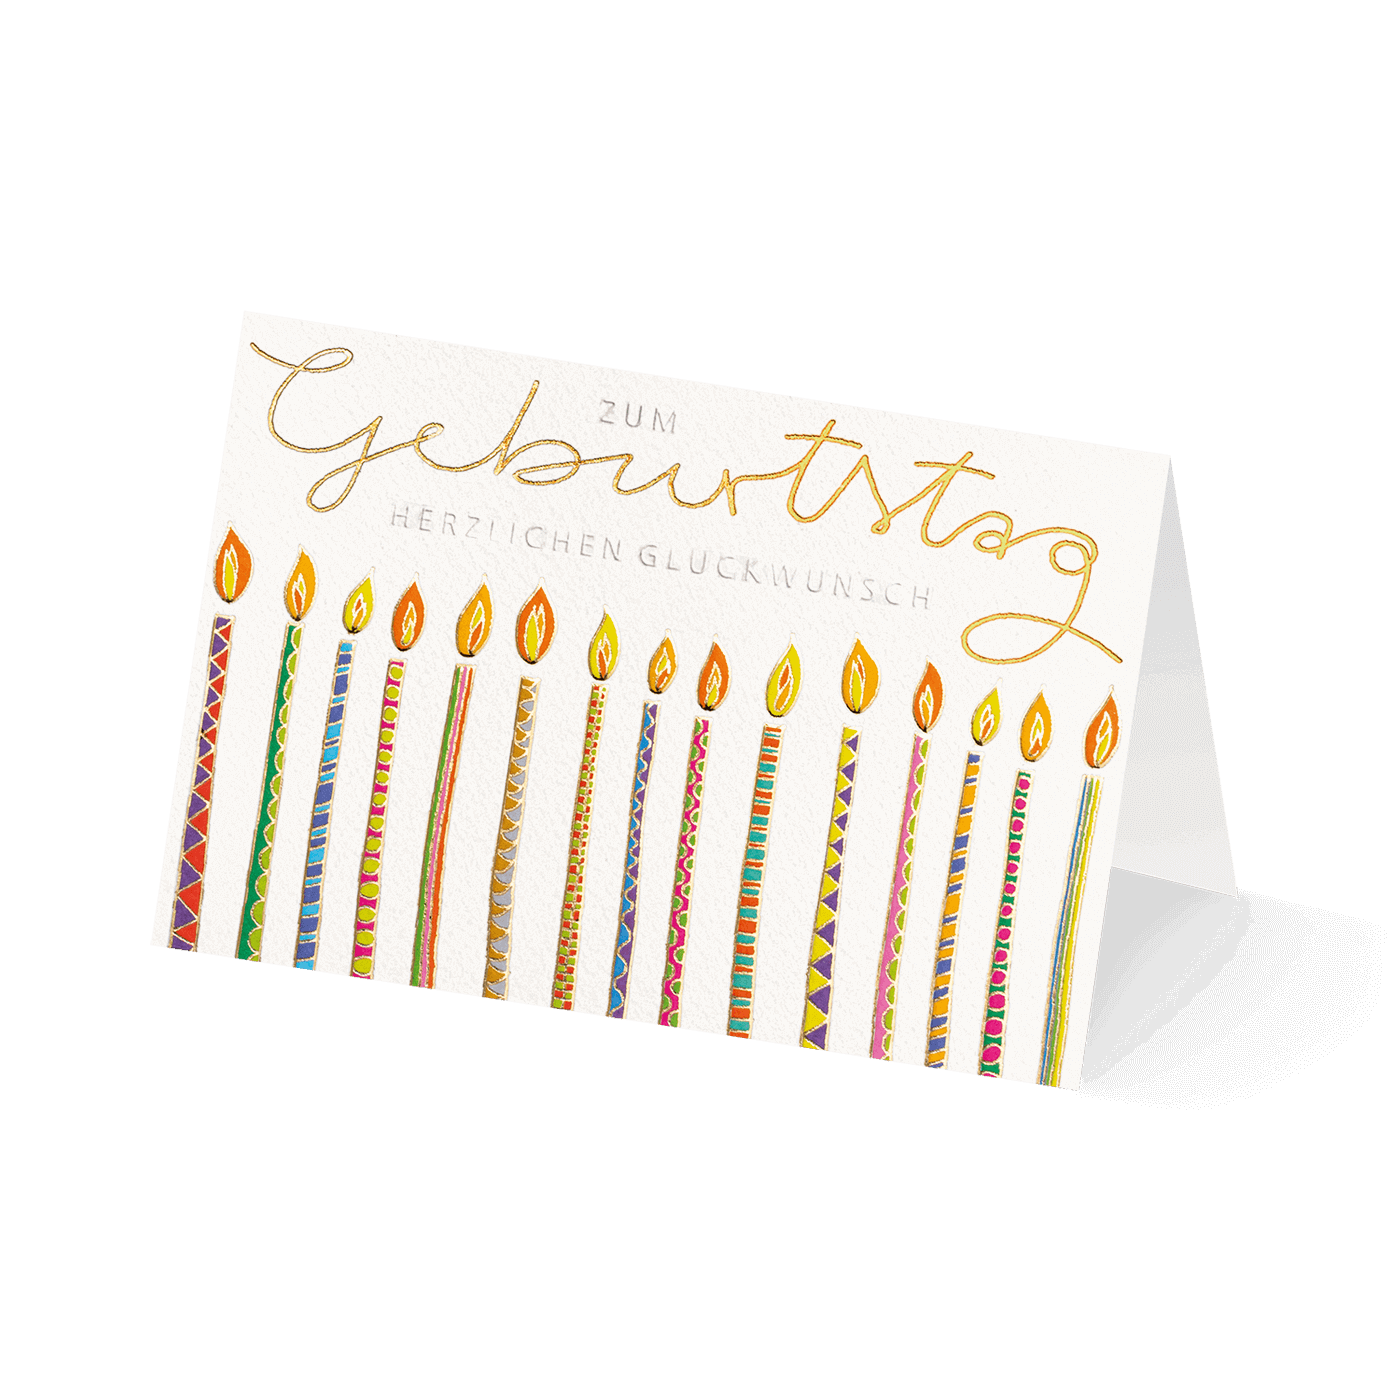 Grußkarte „Edle Geburtstagswünsche“ kaufen im UNICEF Grußkartenshop. Bild 3